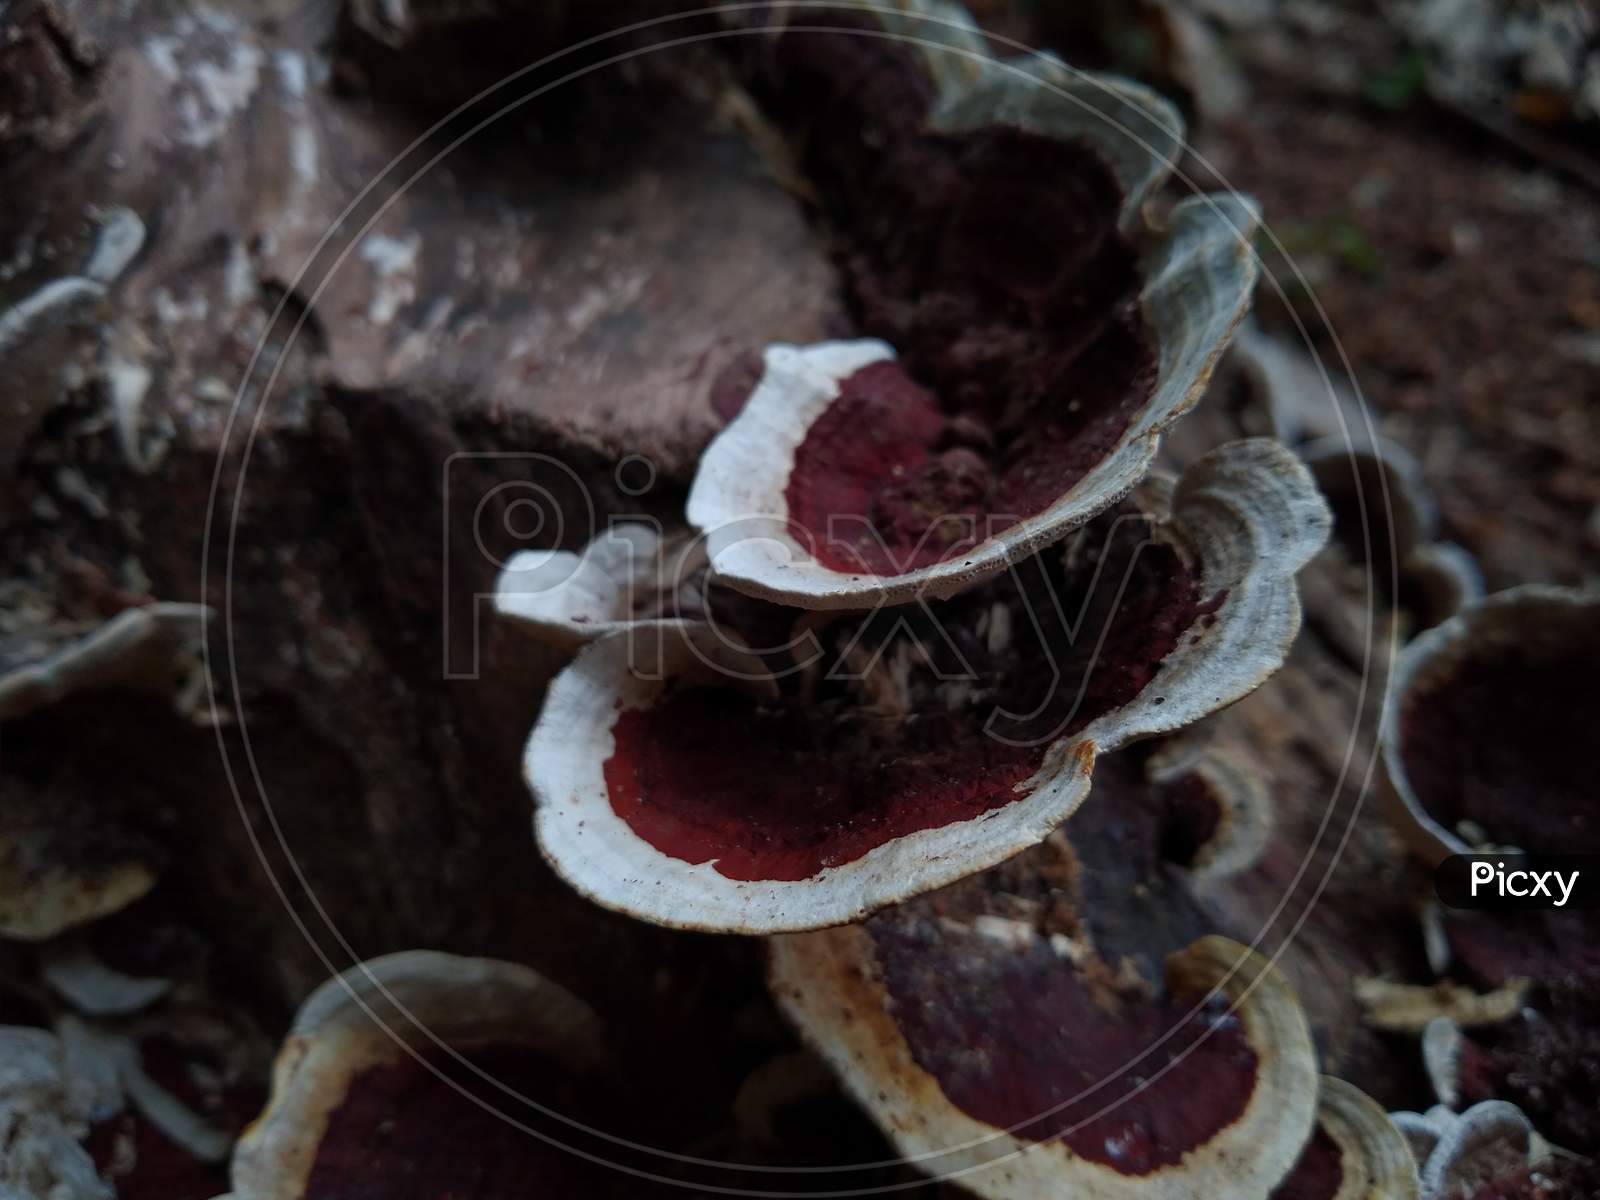 Mushrooms on the Dead wood